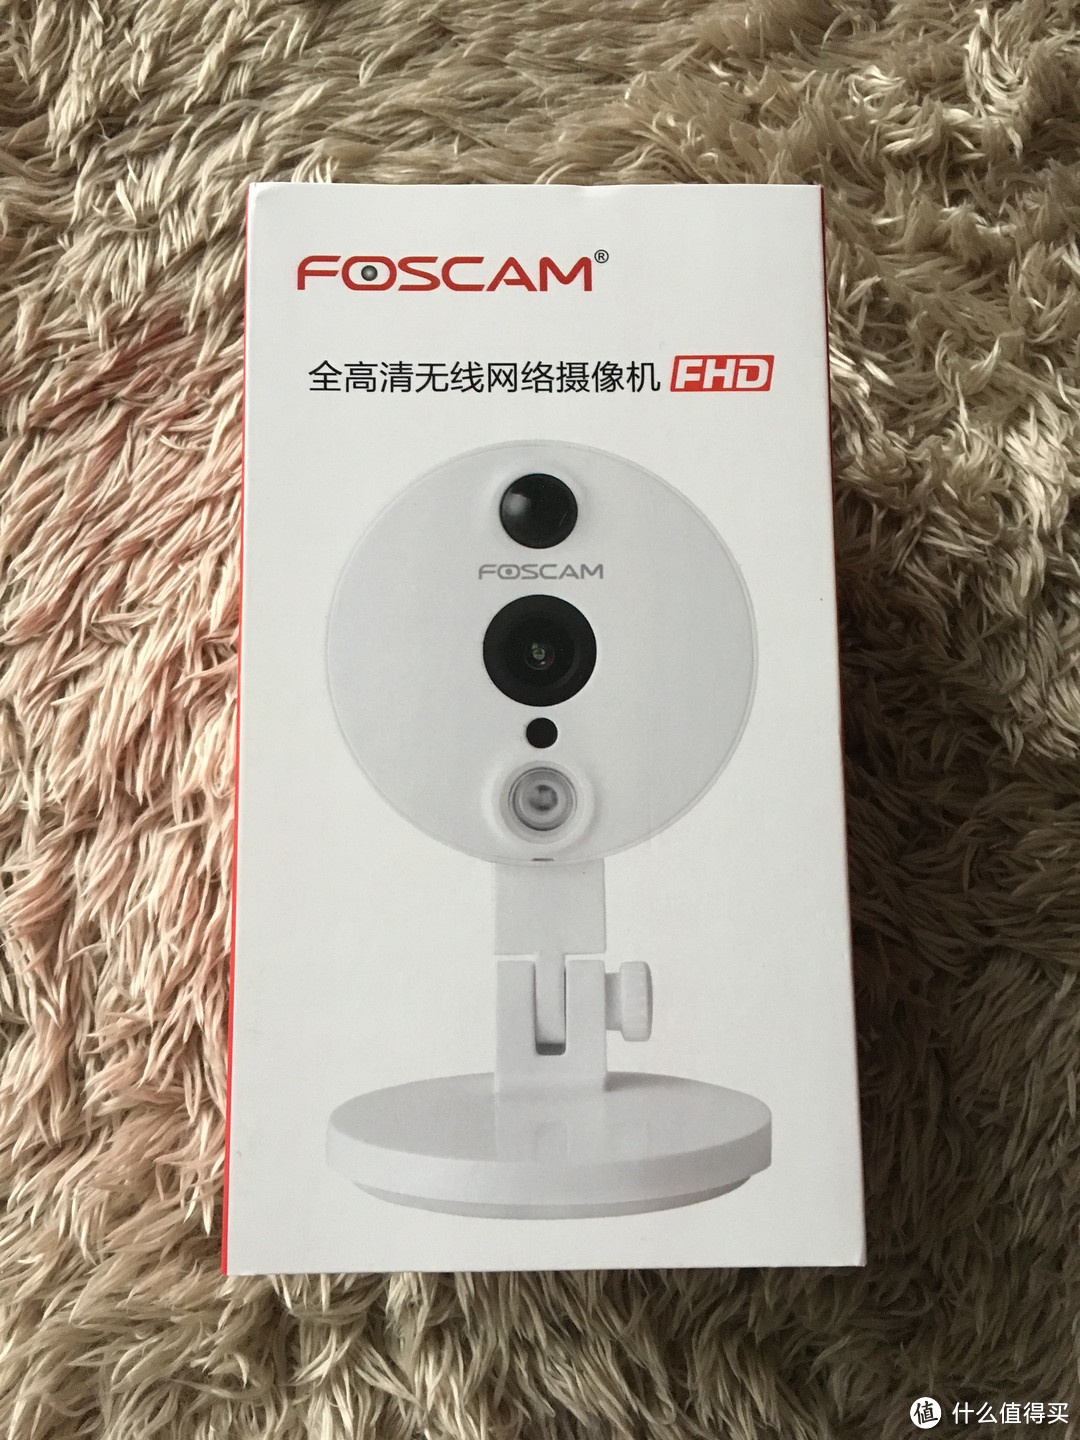 一个支持群晖的网络摄像头 FOSCAM IQ200